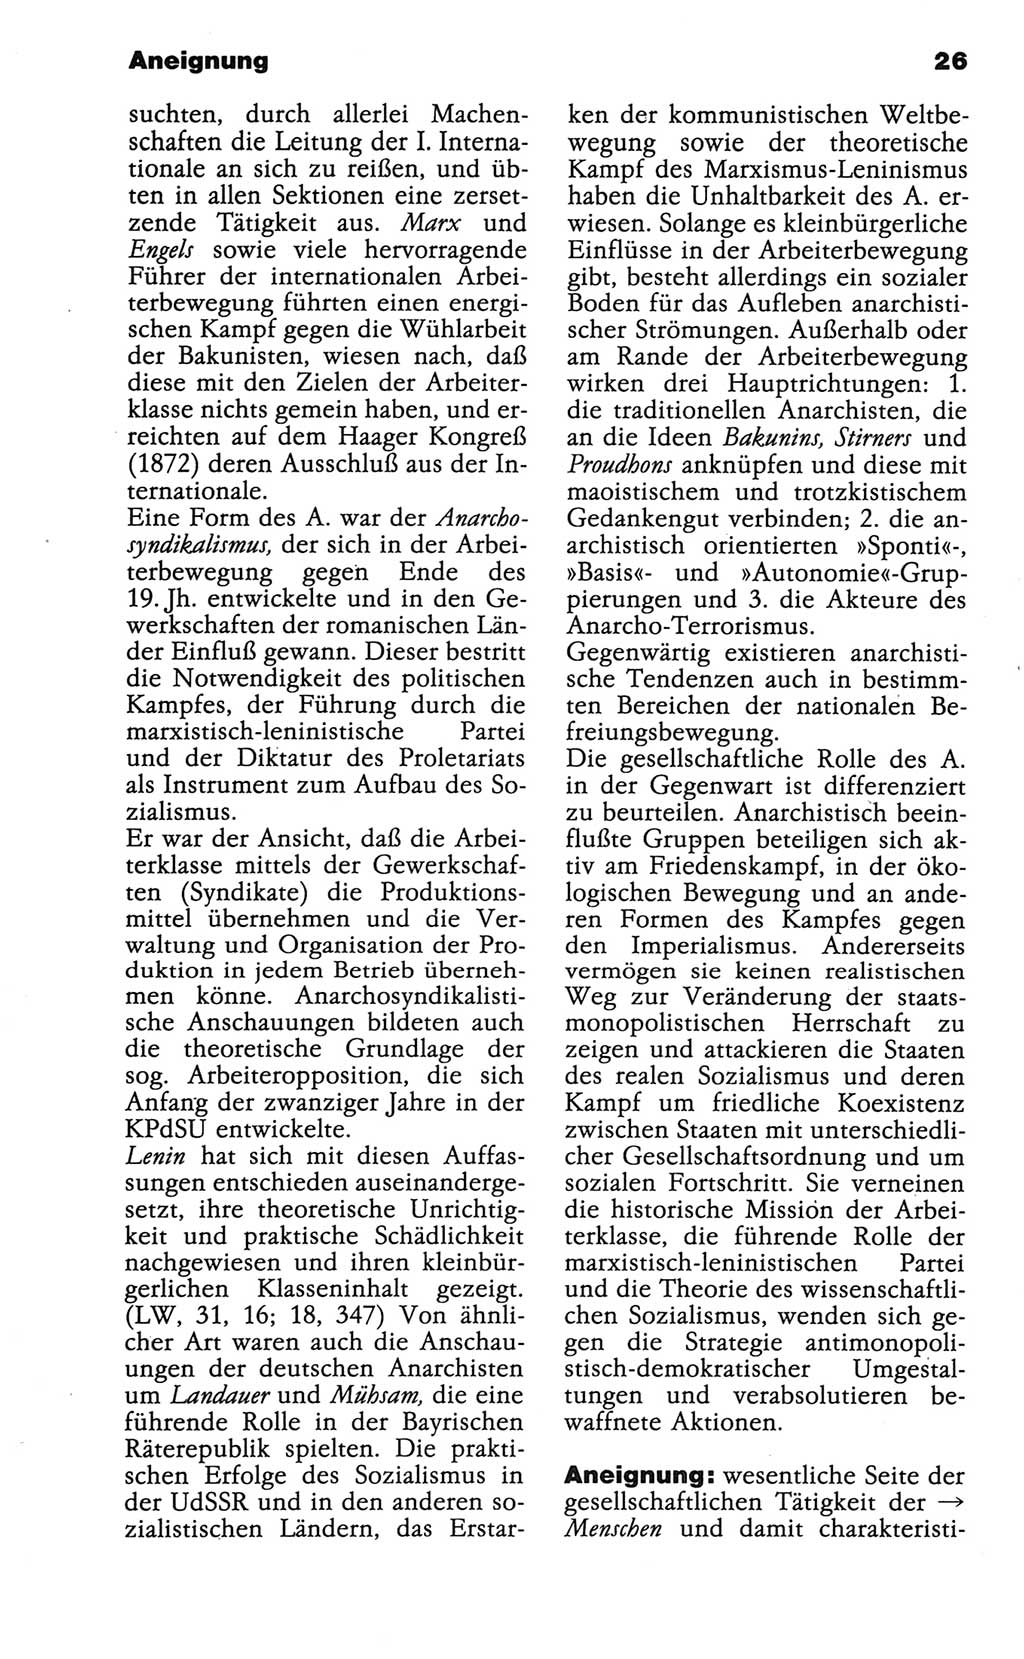 Wörterbuch der marxistisch-leninistischen Philosophie [Deutsche Demokratische Republik (DDR)] 1986, Seite 26 (Wb. ML Phil. DDR 1986, S. 26)